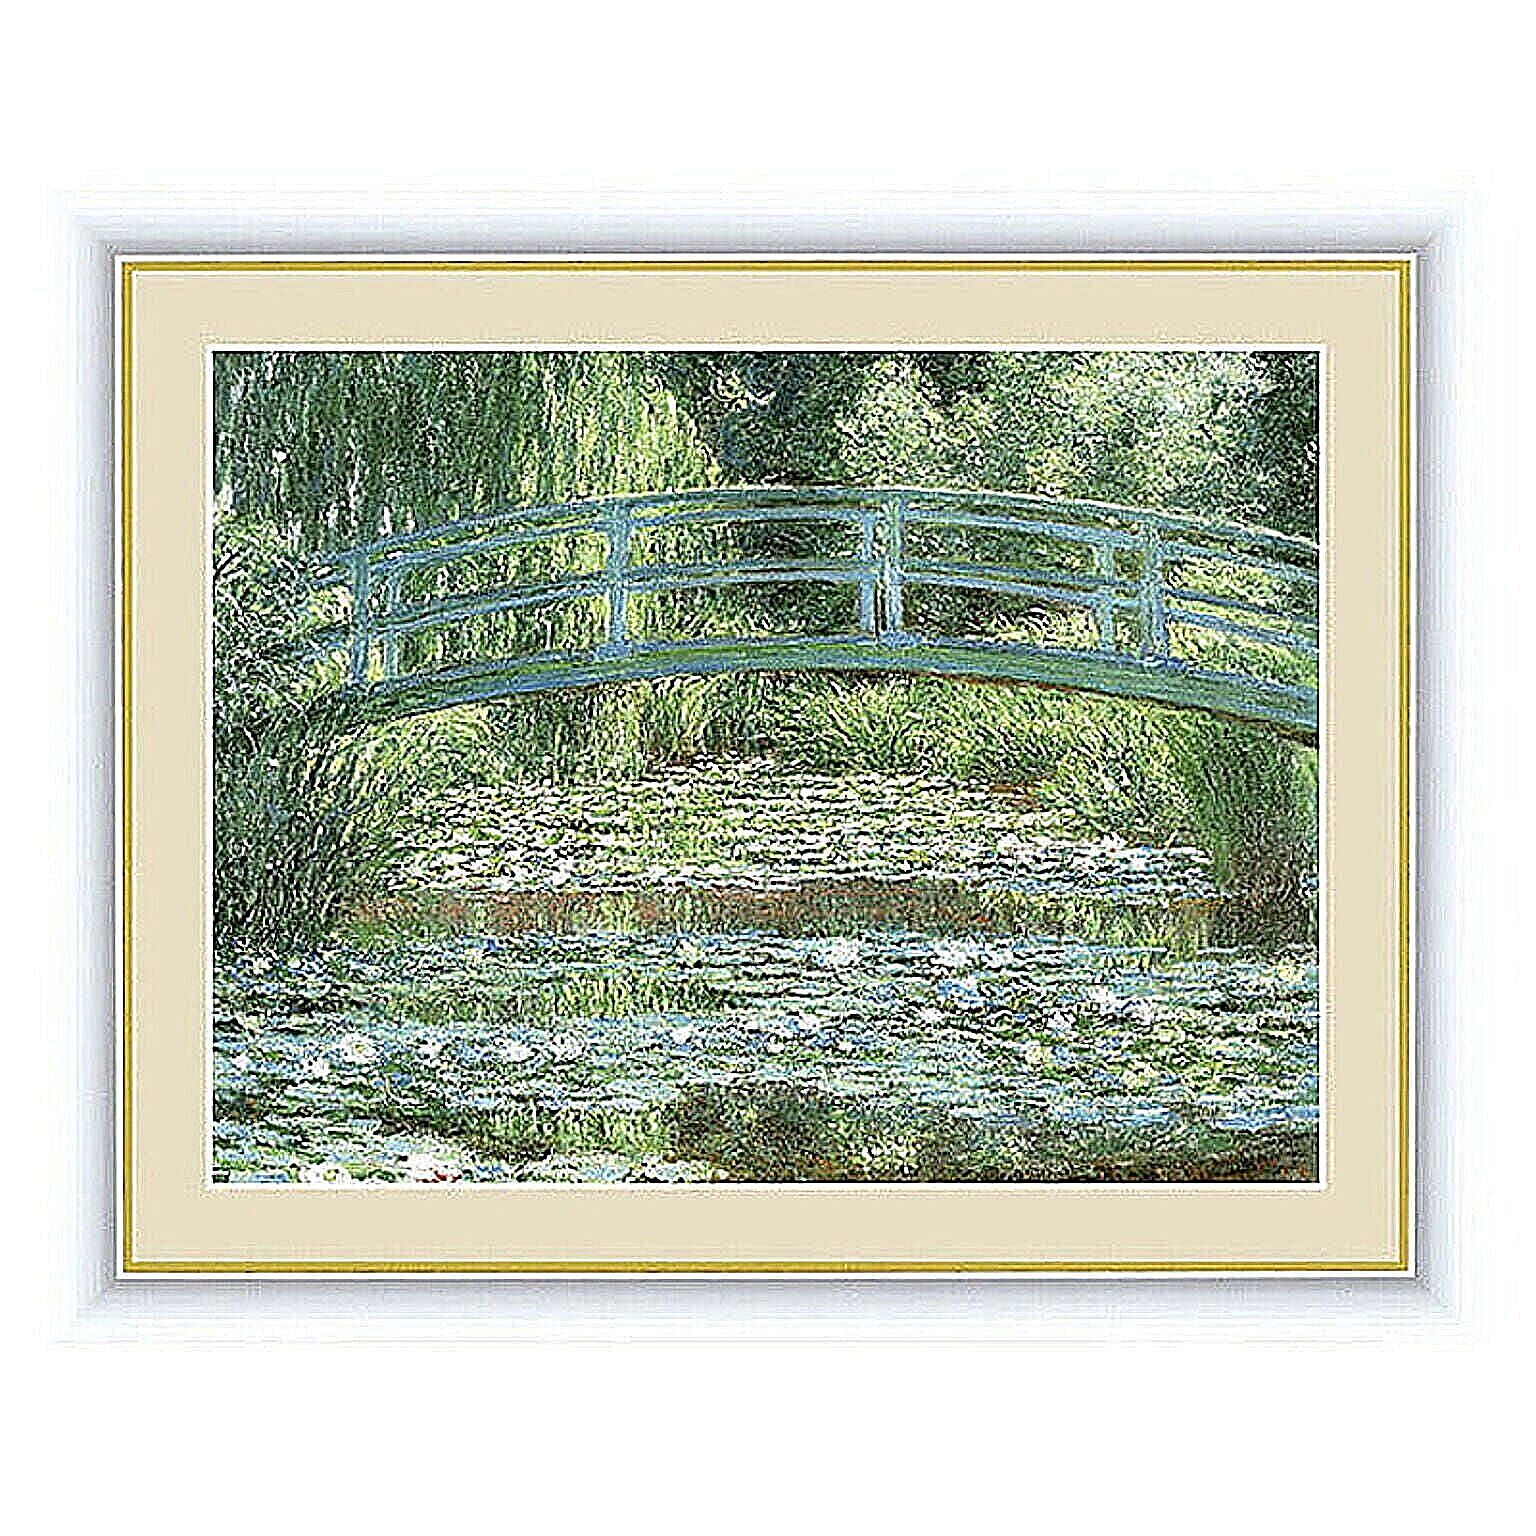 アート 額絵 睡蓮の池と日本の橋 モネ 本紙サイズ F4(約31x23cm) 額サイズ 42x34cm 三幸